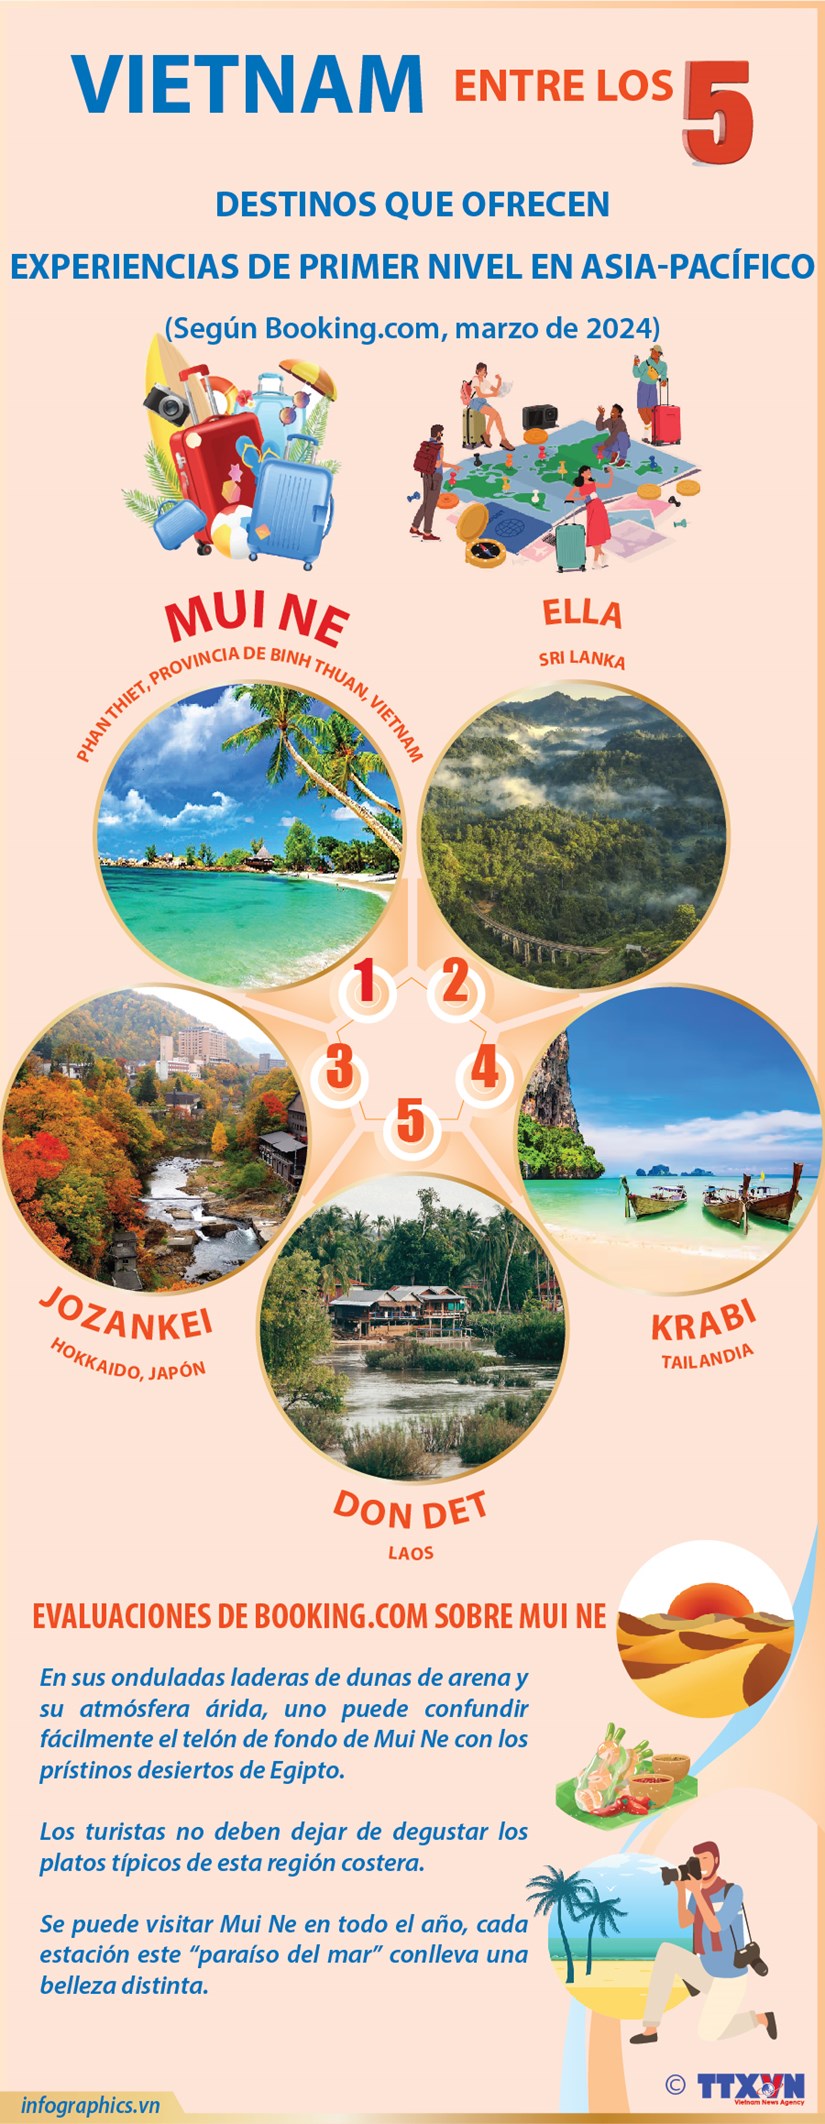 Vietnam entre los cinco destinos que ofrecen experiencias de primer nivel en Asia-Pacifico hinh anh 1